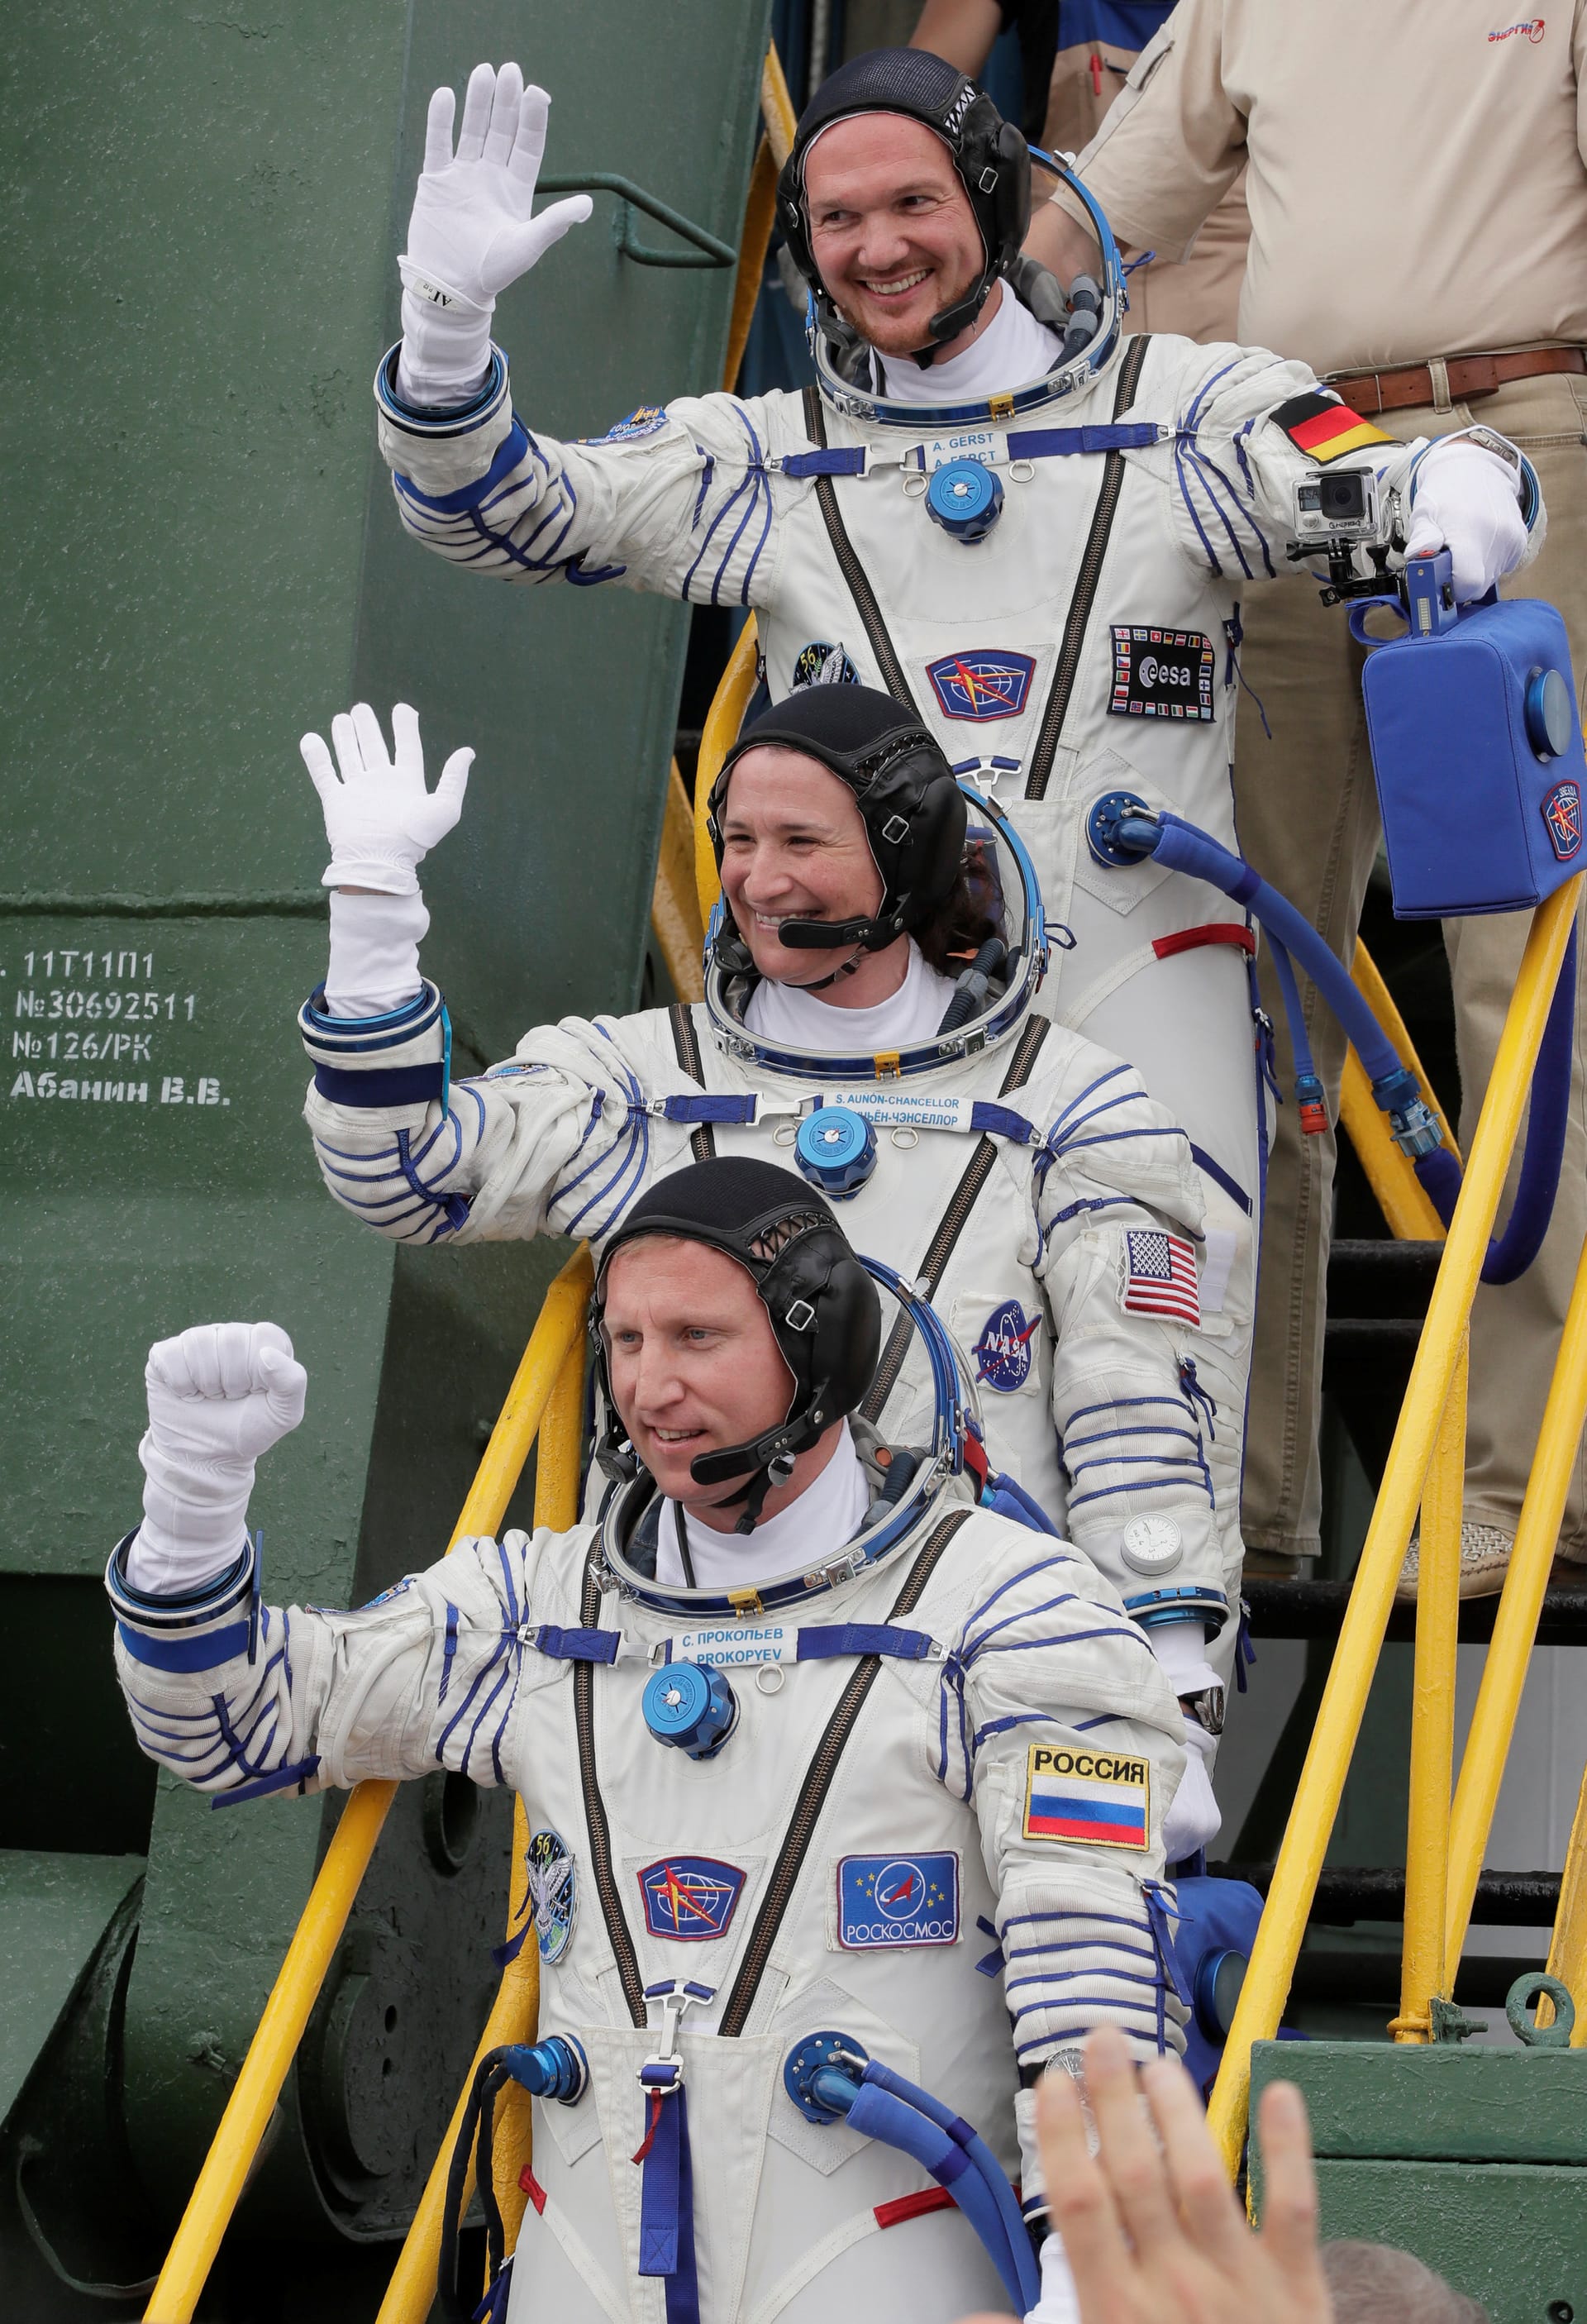 Die drei Raumfahrer beim Besteigen der Rakete.